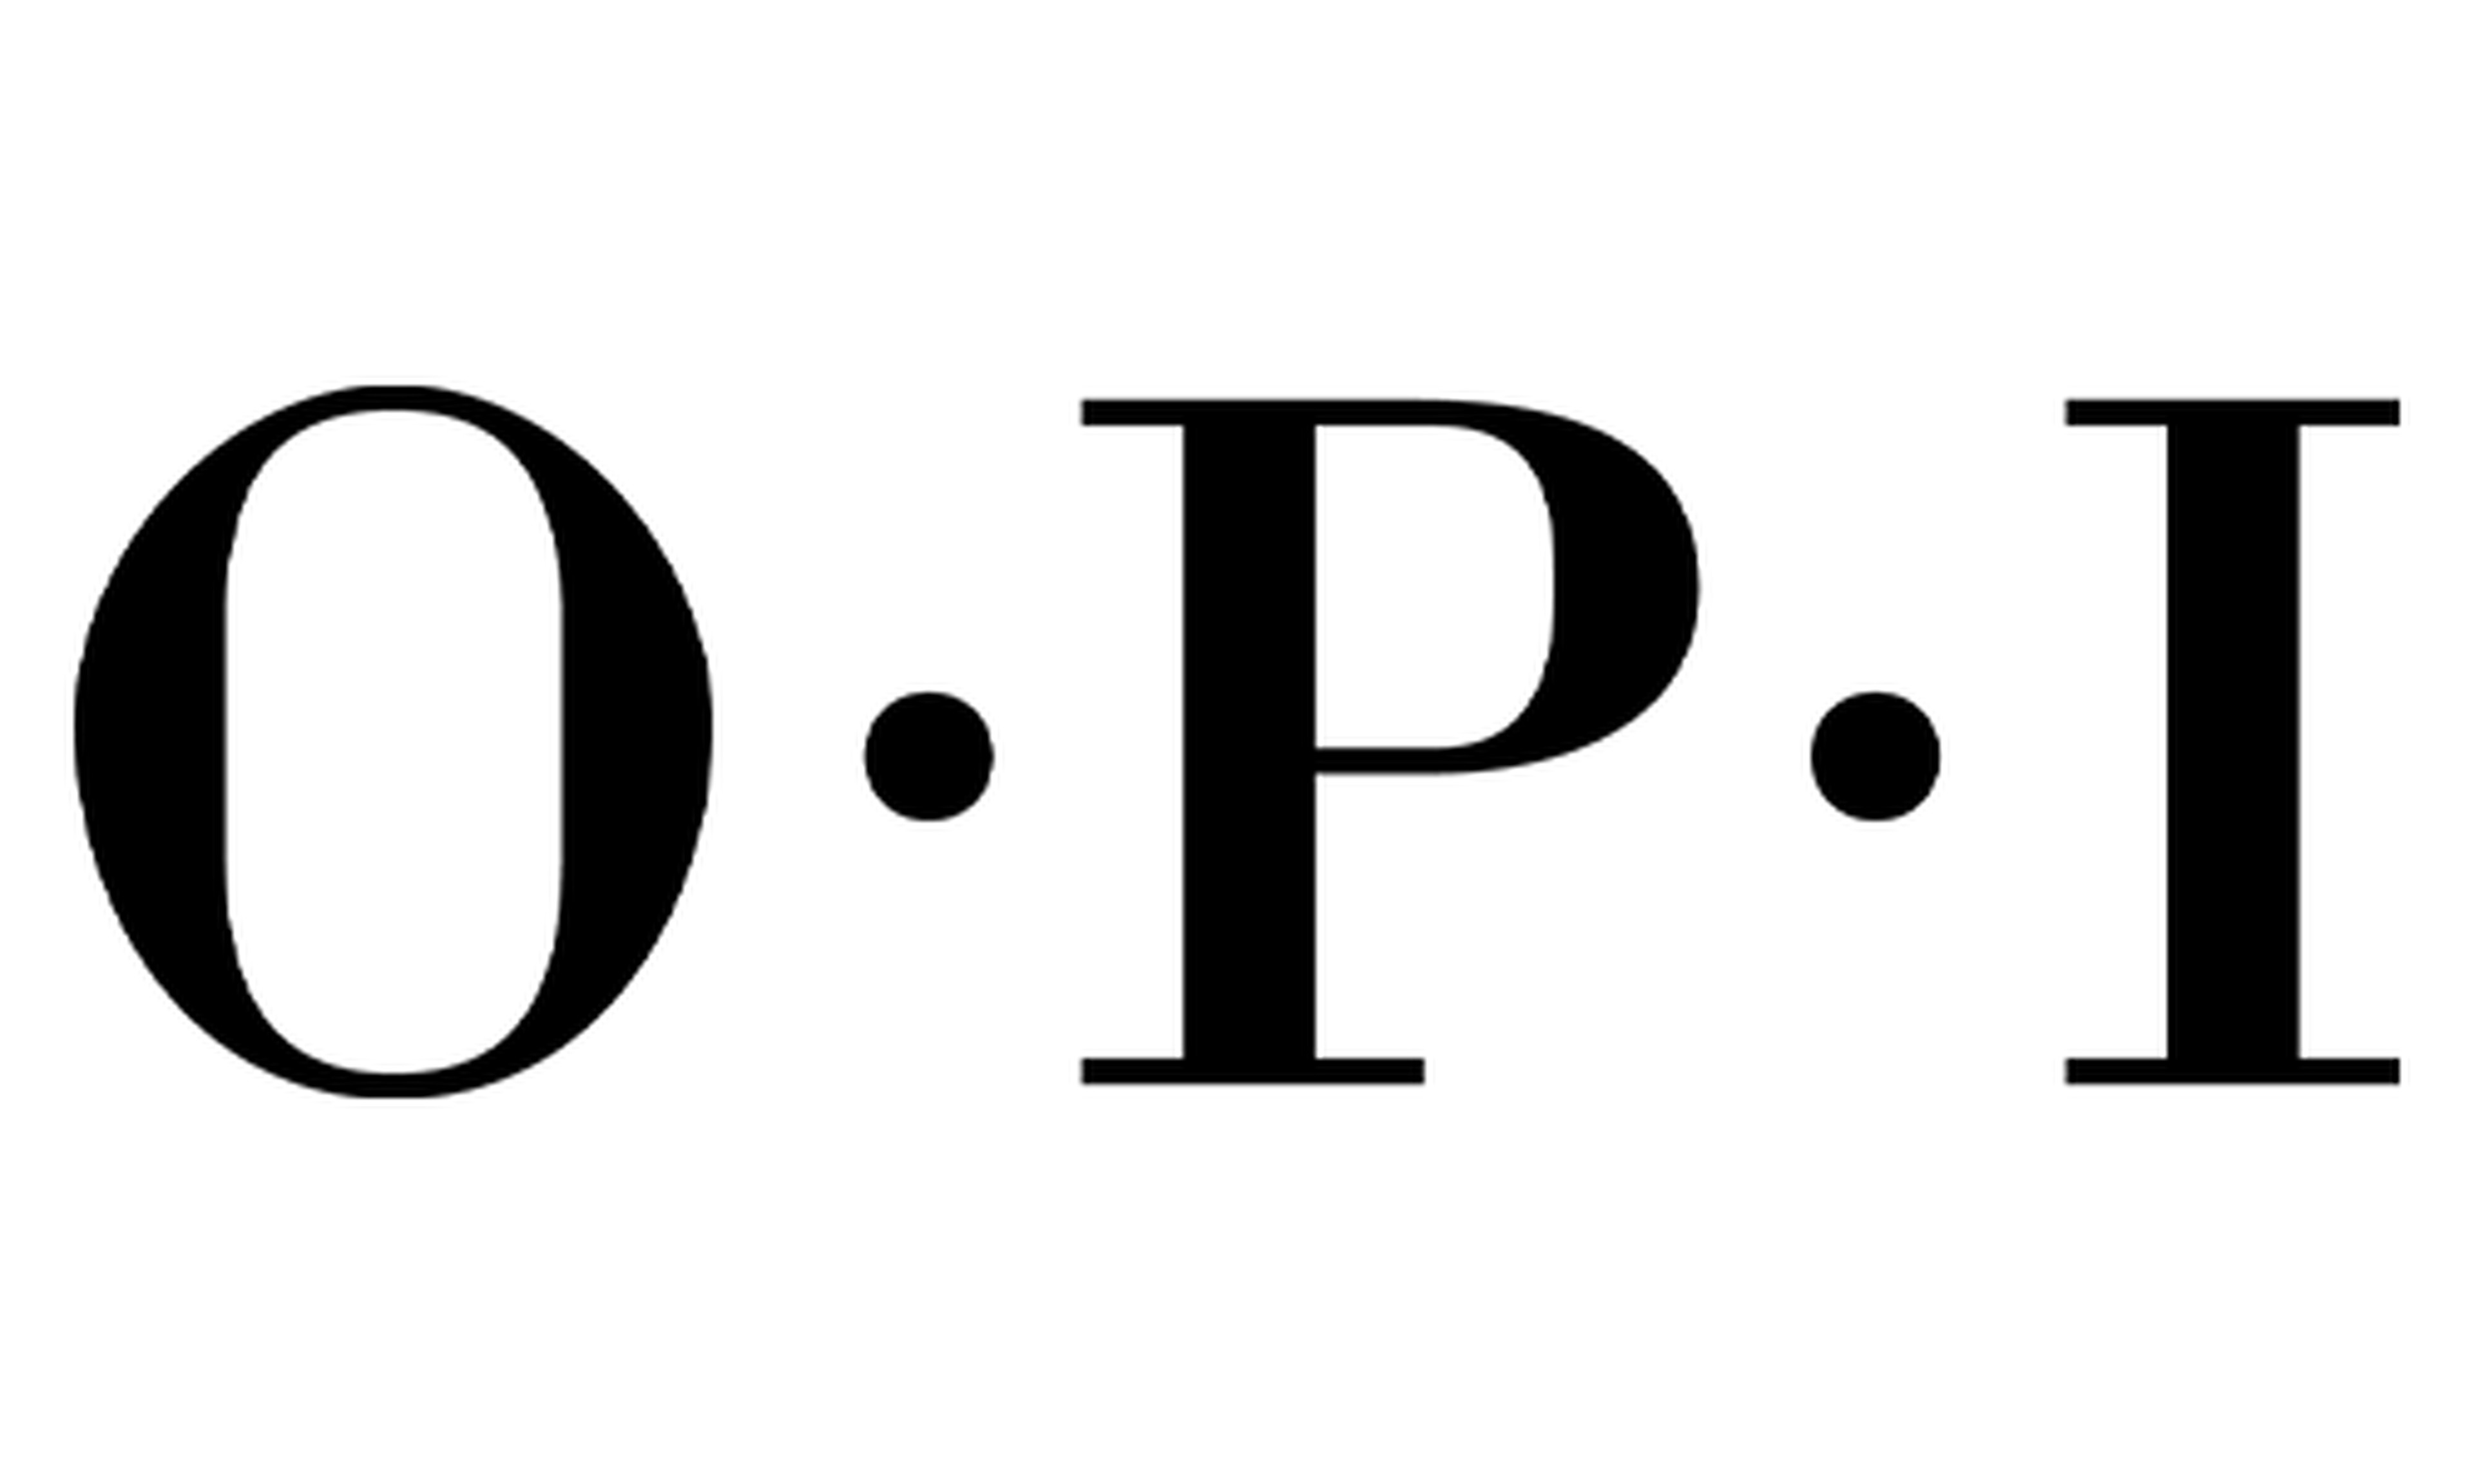 OPI logotype